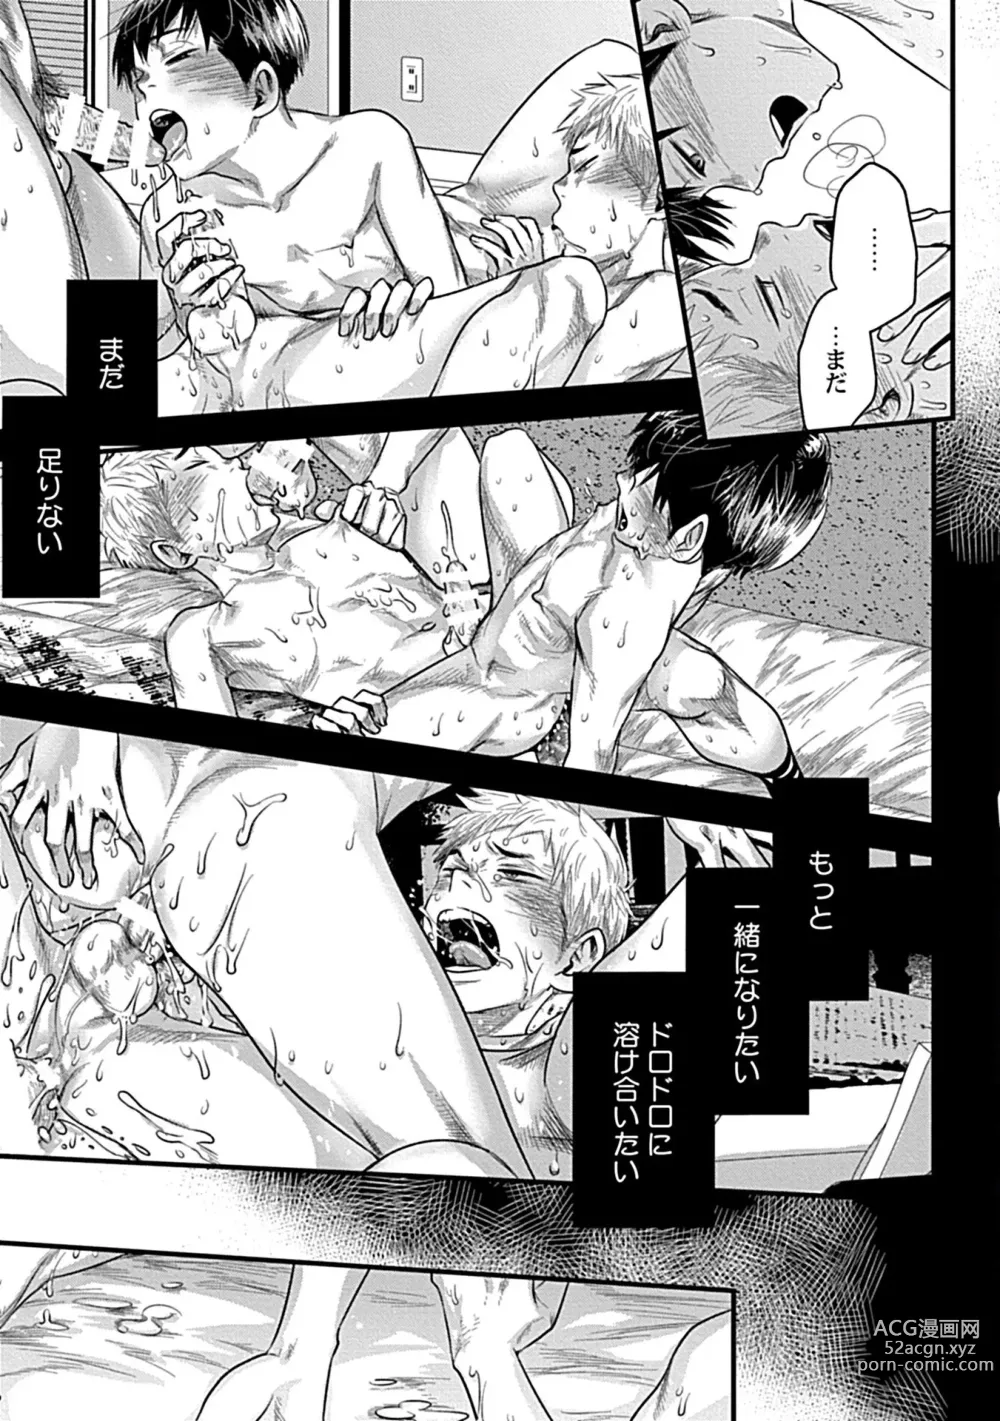 Page 27 of manga Zutto Kimi o Mite Ita